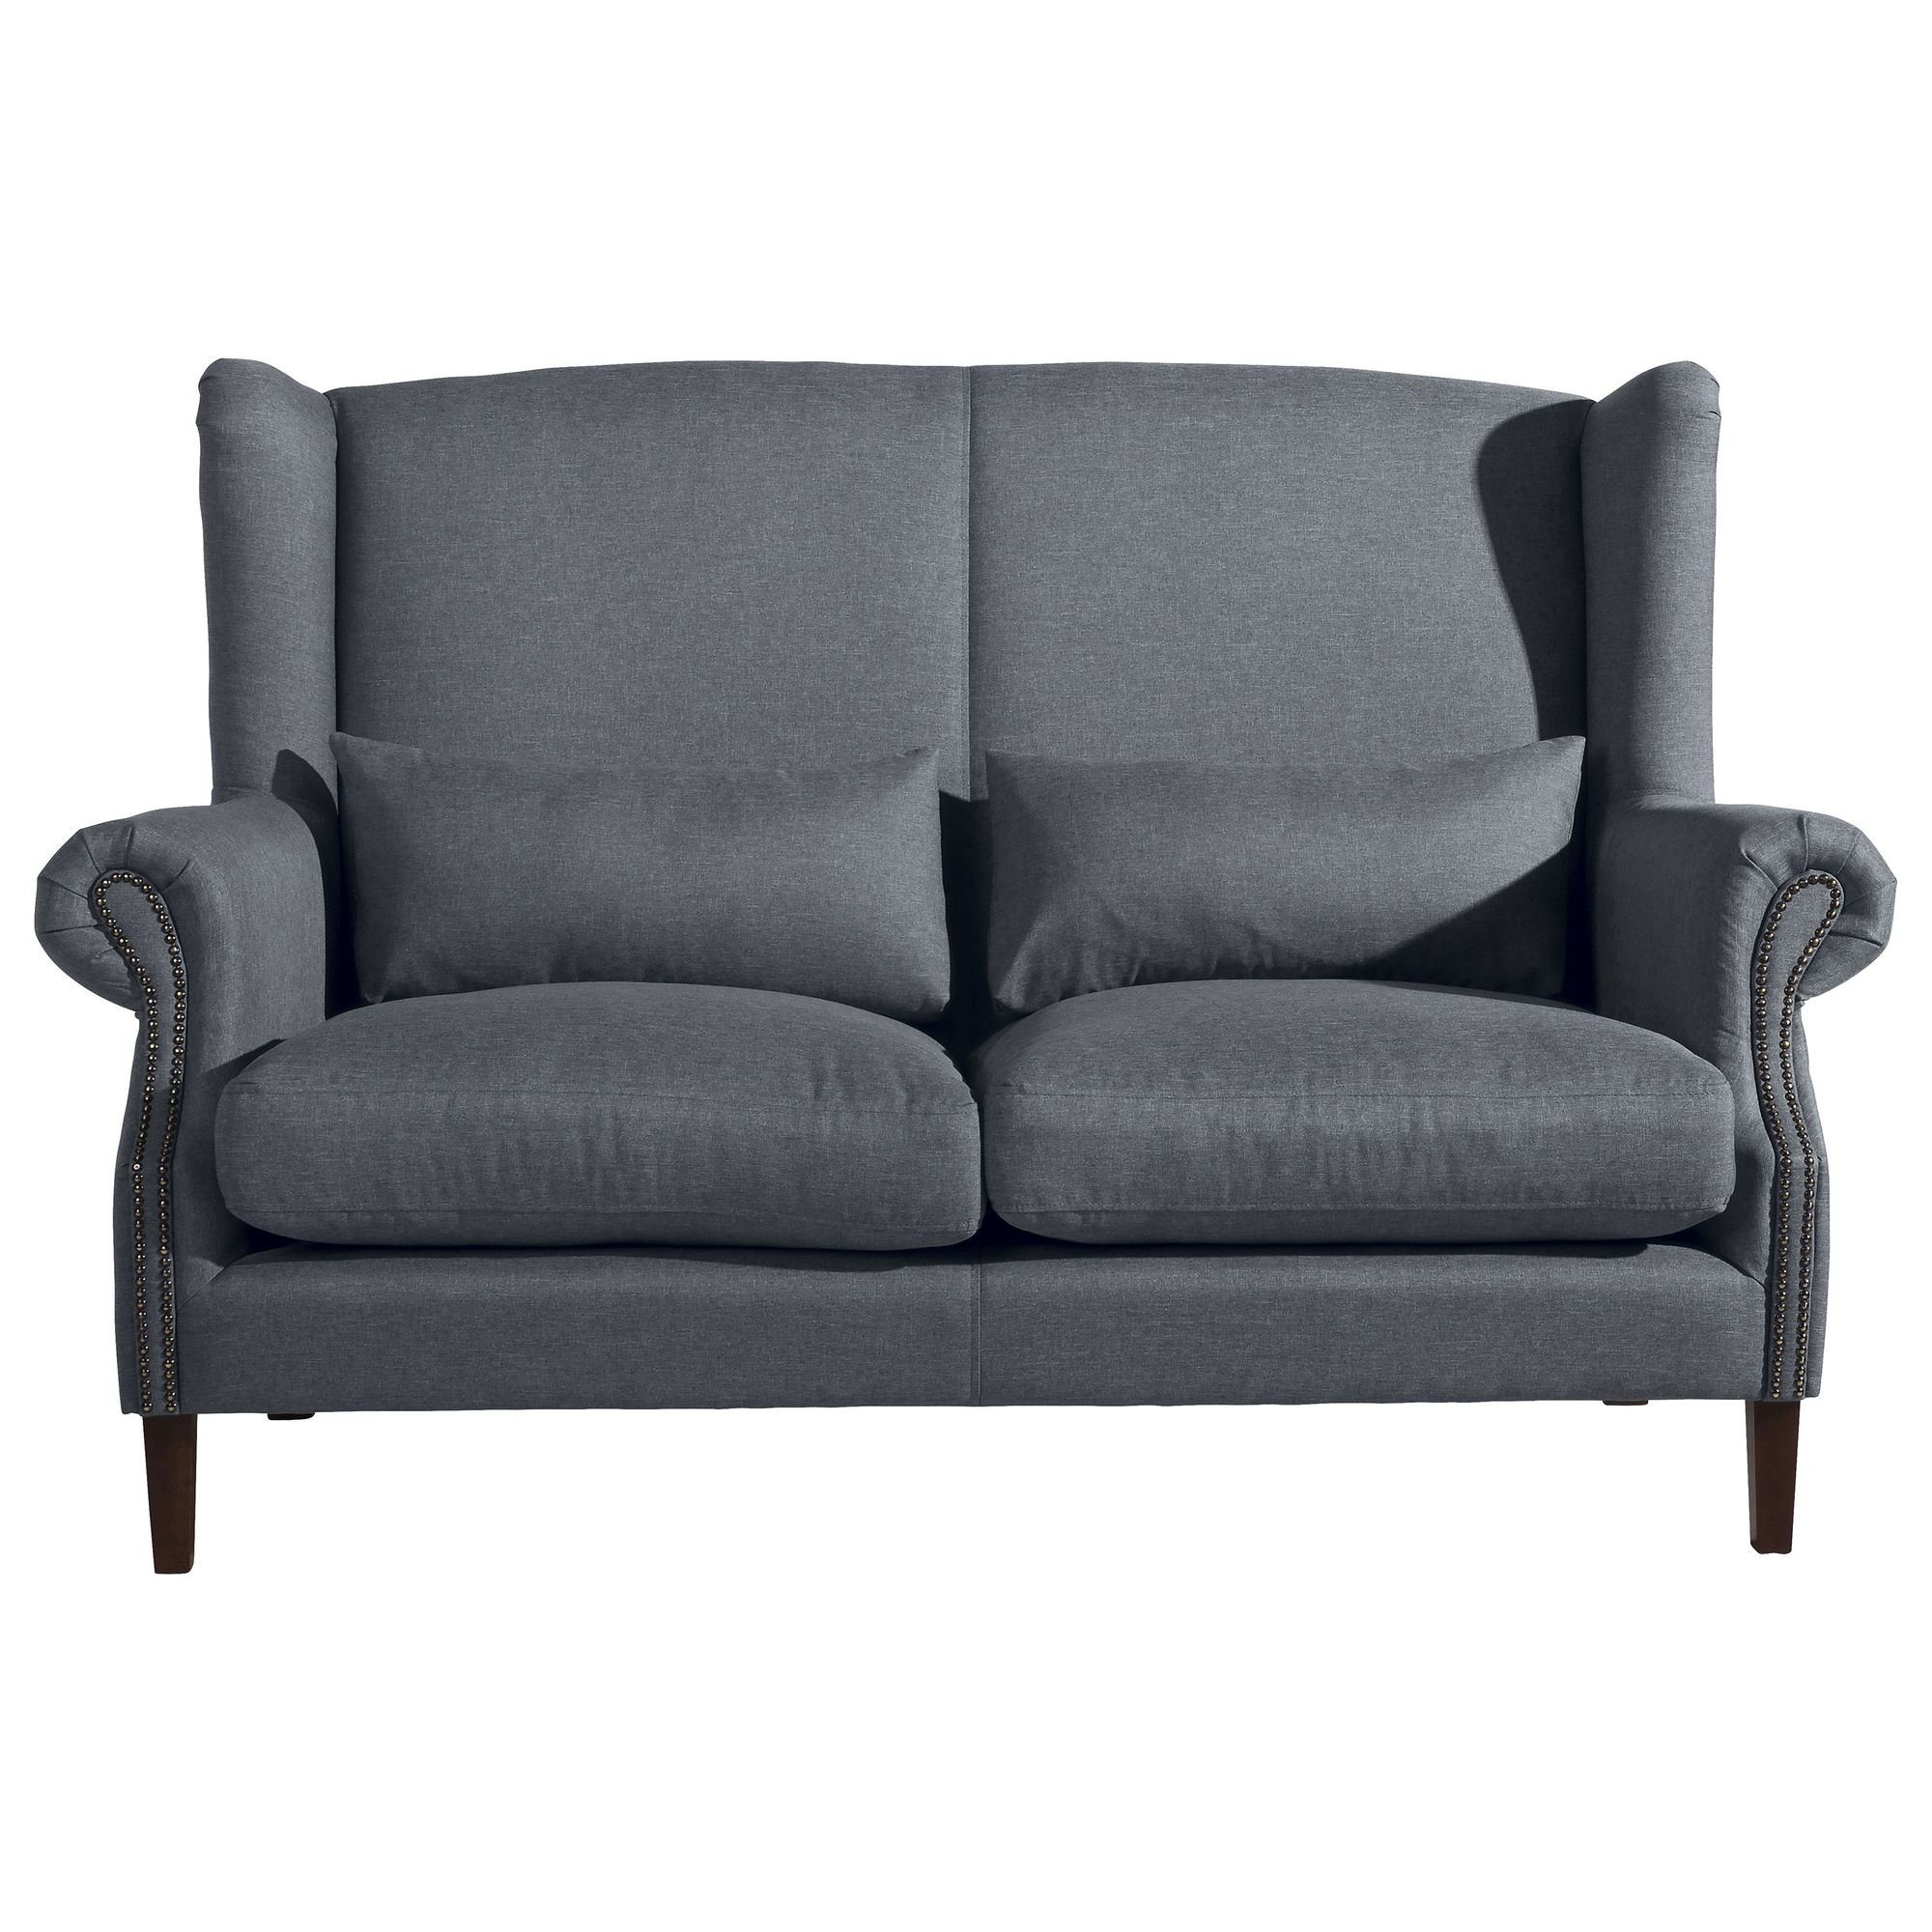 58 aufm Bezug Sitz Buche Sparpreis Kandy 2-Sitzer Sofa Sofa Teile, nussba, inkl. 1 Kessel Flachgewebe verarbeitet,bequemer hochwertig Versand Kostenlosem